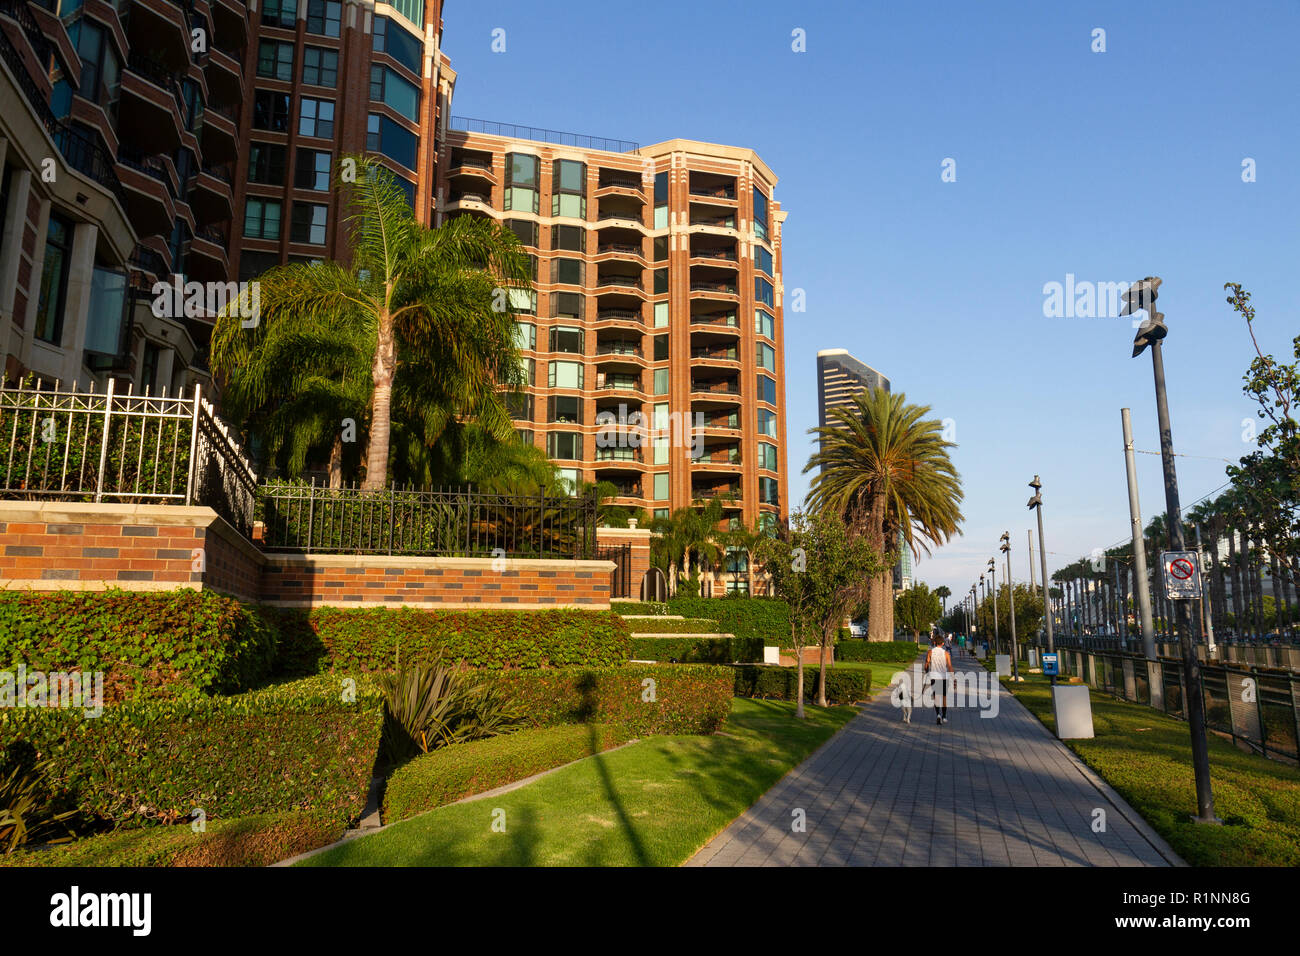 CityFront Terrazza condomini su Martin Luther King Jr. passeggiata nel centro cittadino di San Diego, California, Stati Uniti. Foto Stock